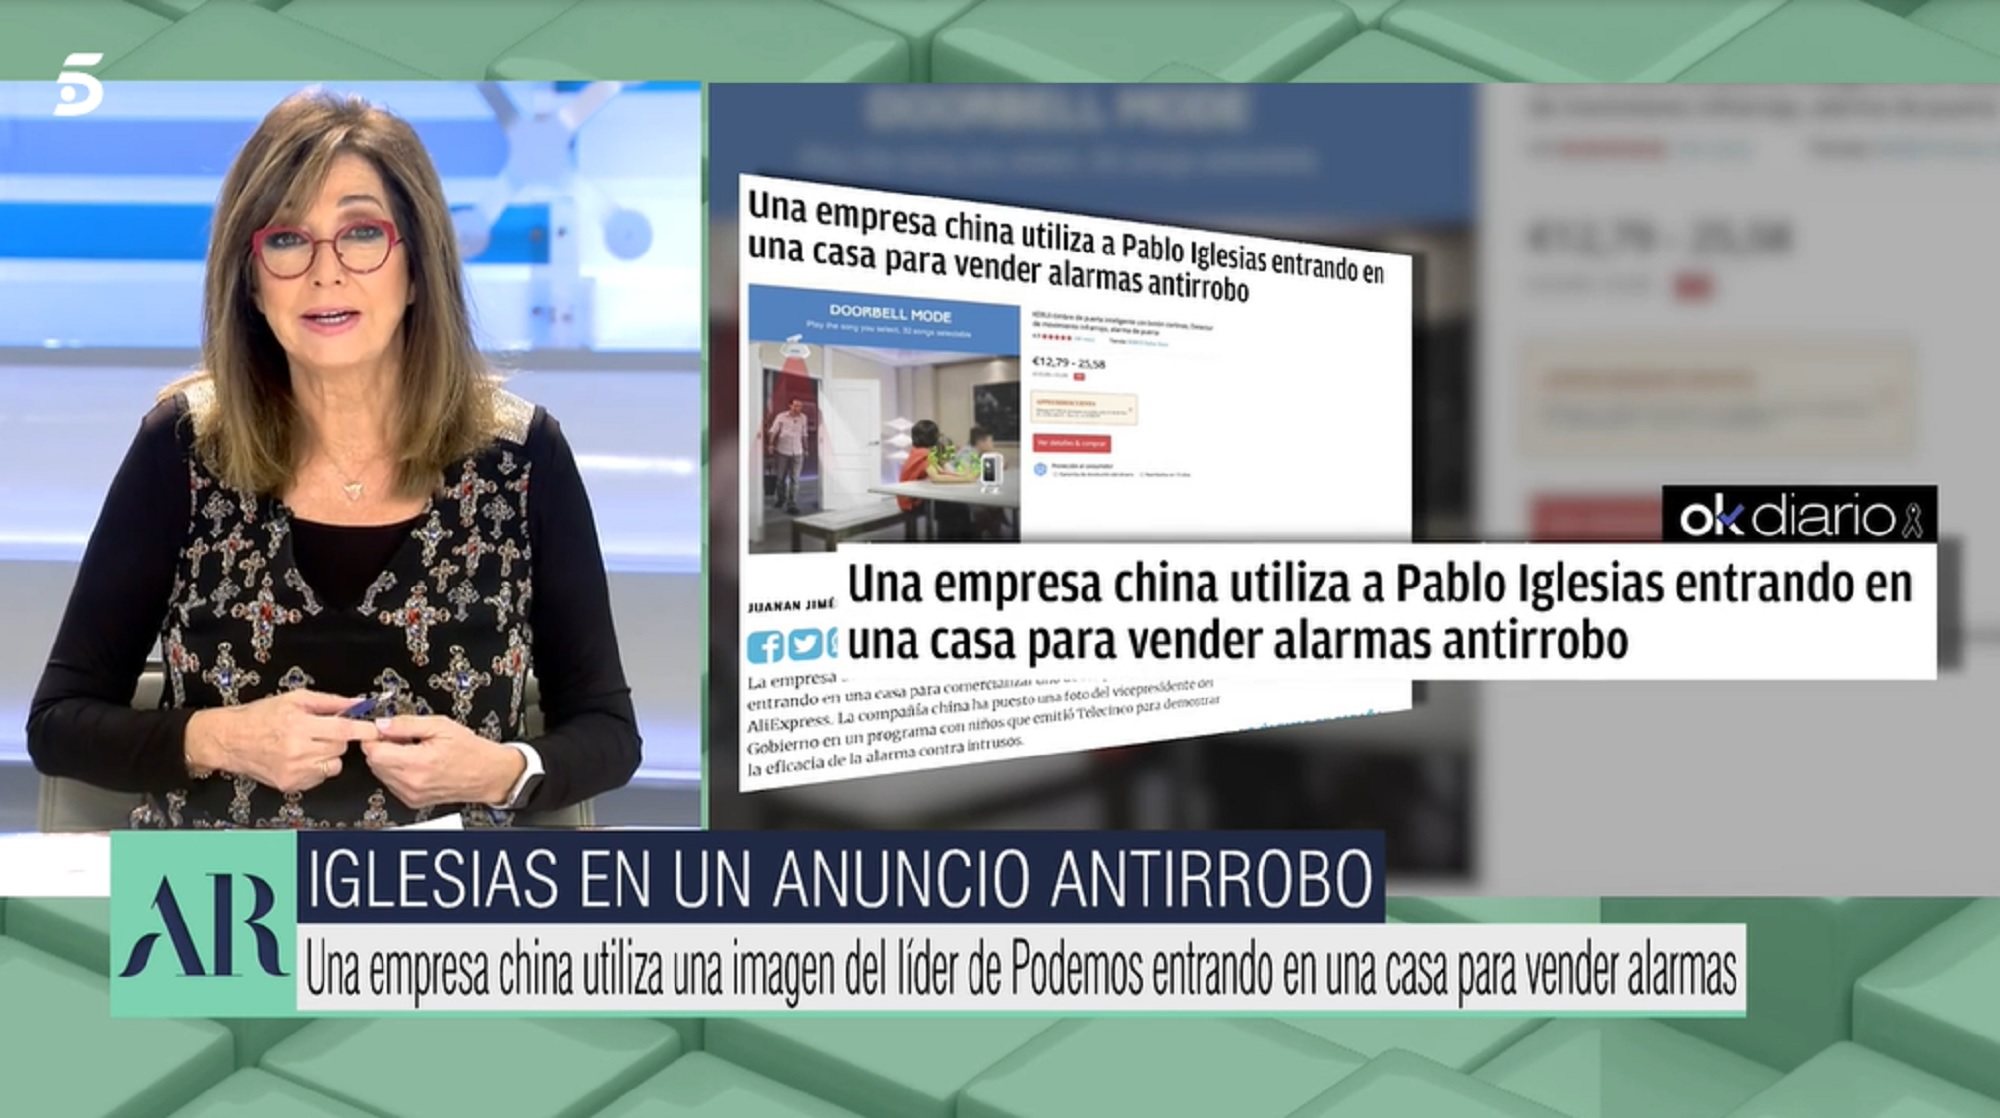 Ana Rosa Quintana explica que una empresa china que vende alarmas ha utilizado una imagen de Pablo Iglesias sin el consentimiento de su programa